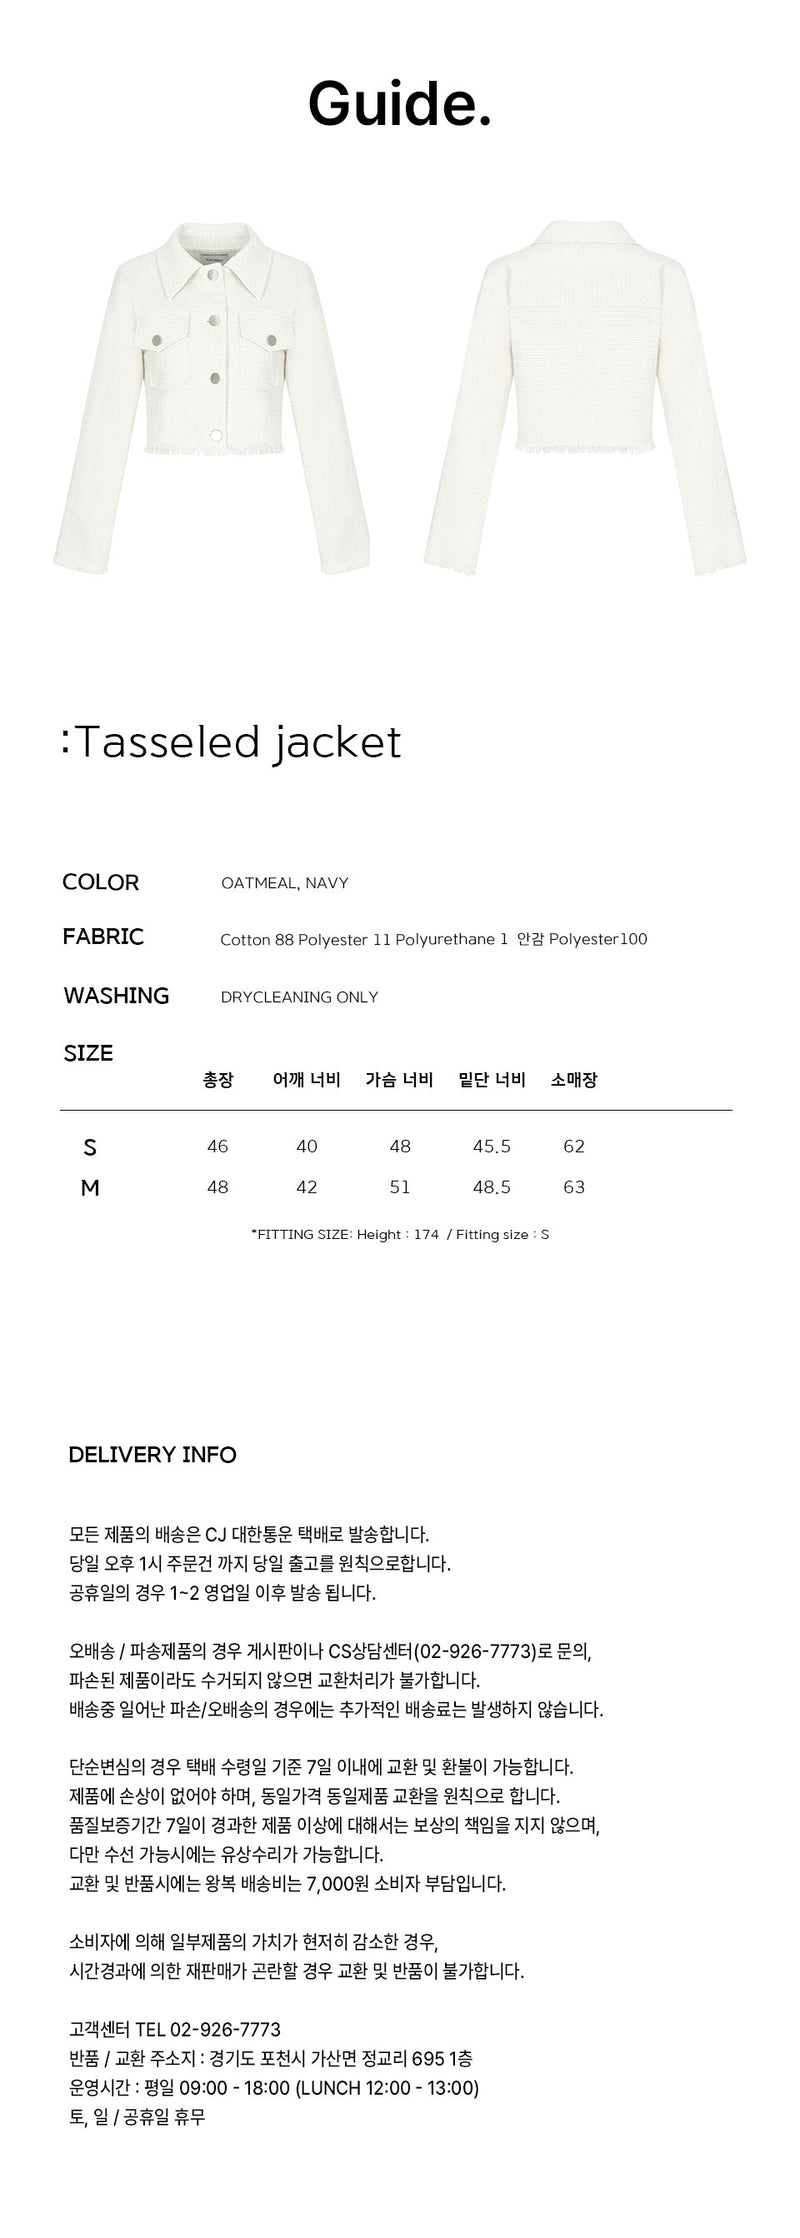 タッスルジャケット / Tasseled jacket